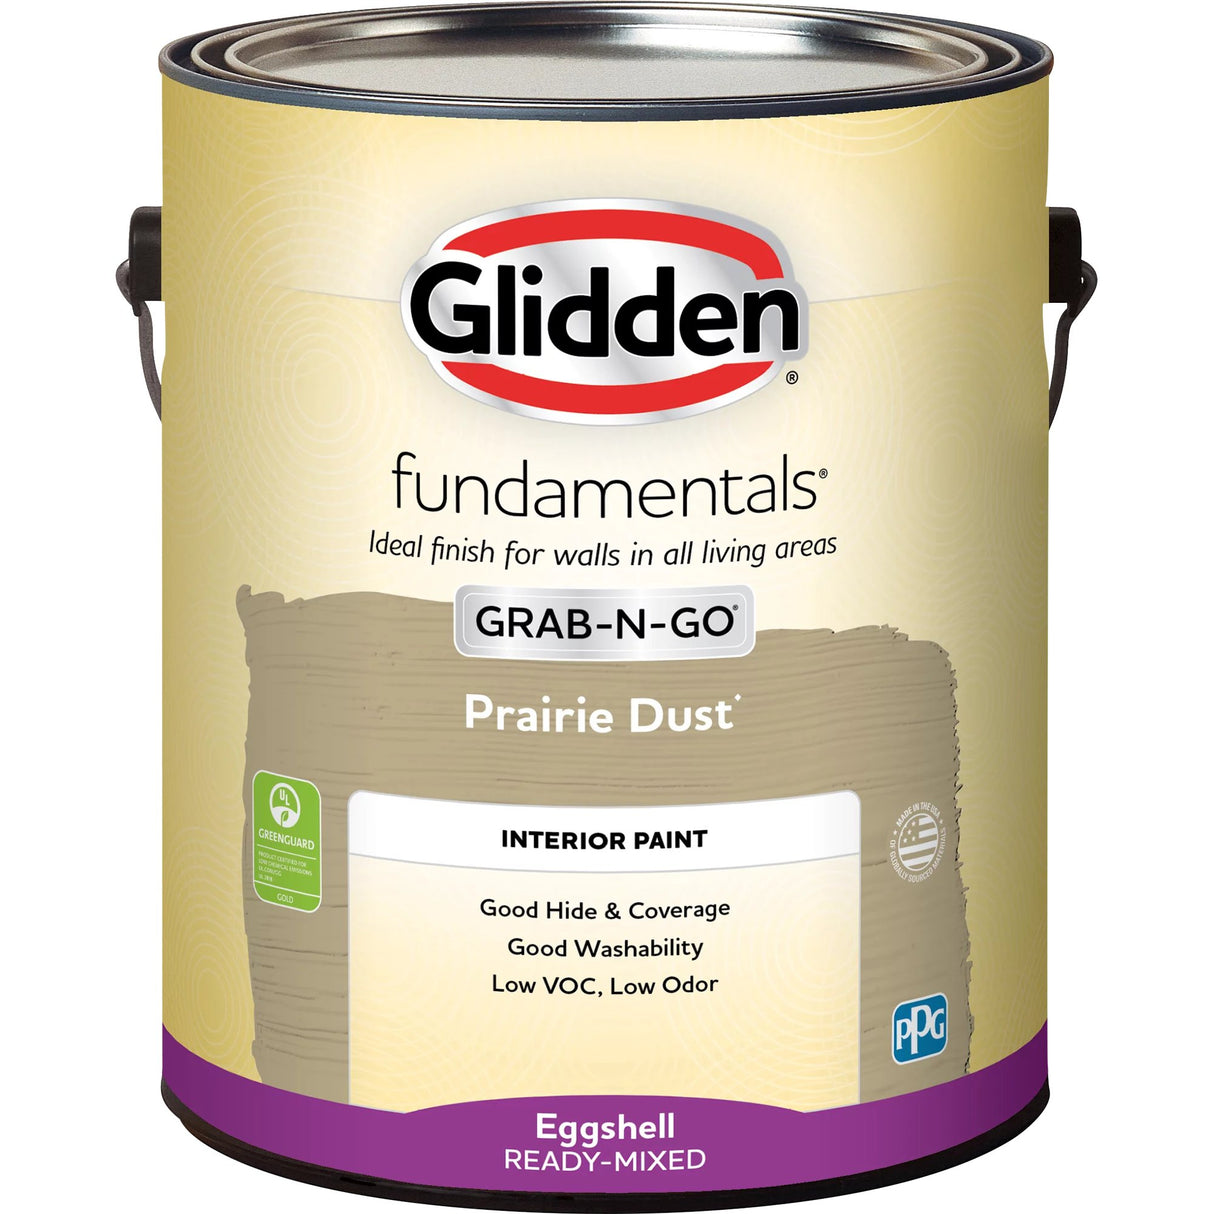 Glidden Fundamentals Grab-N-Go Interior Latex, Eggshell (Prairie Dust, 1-Gallon)